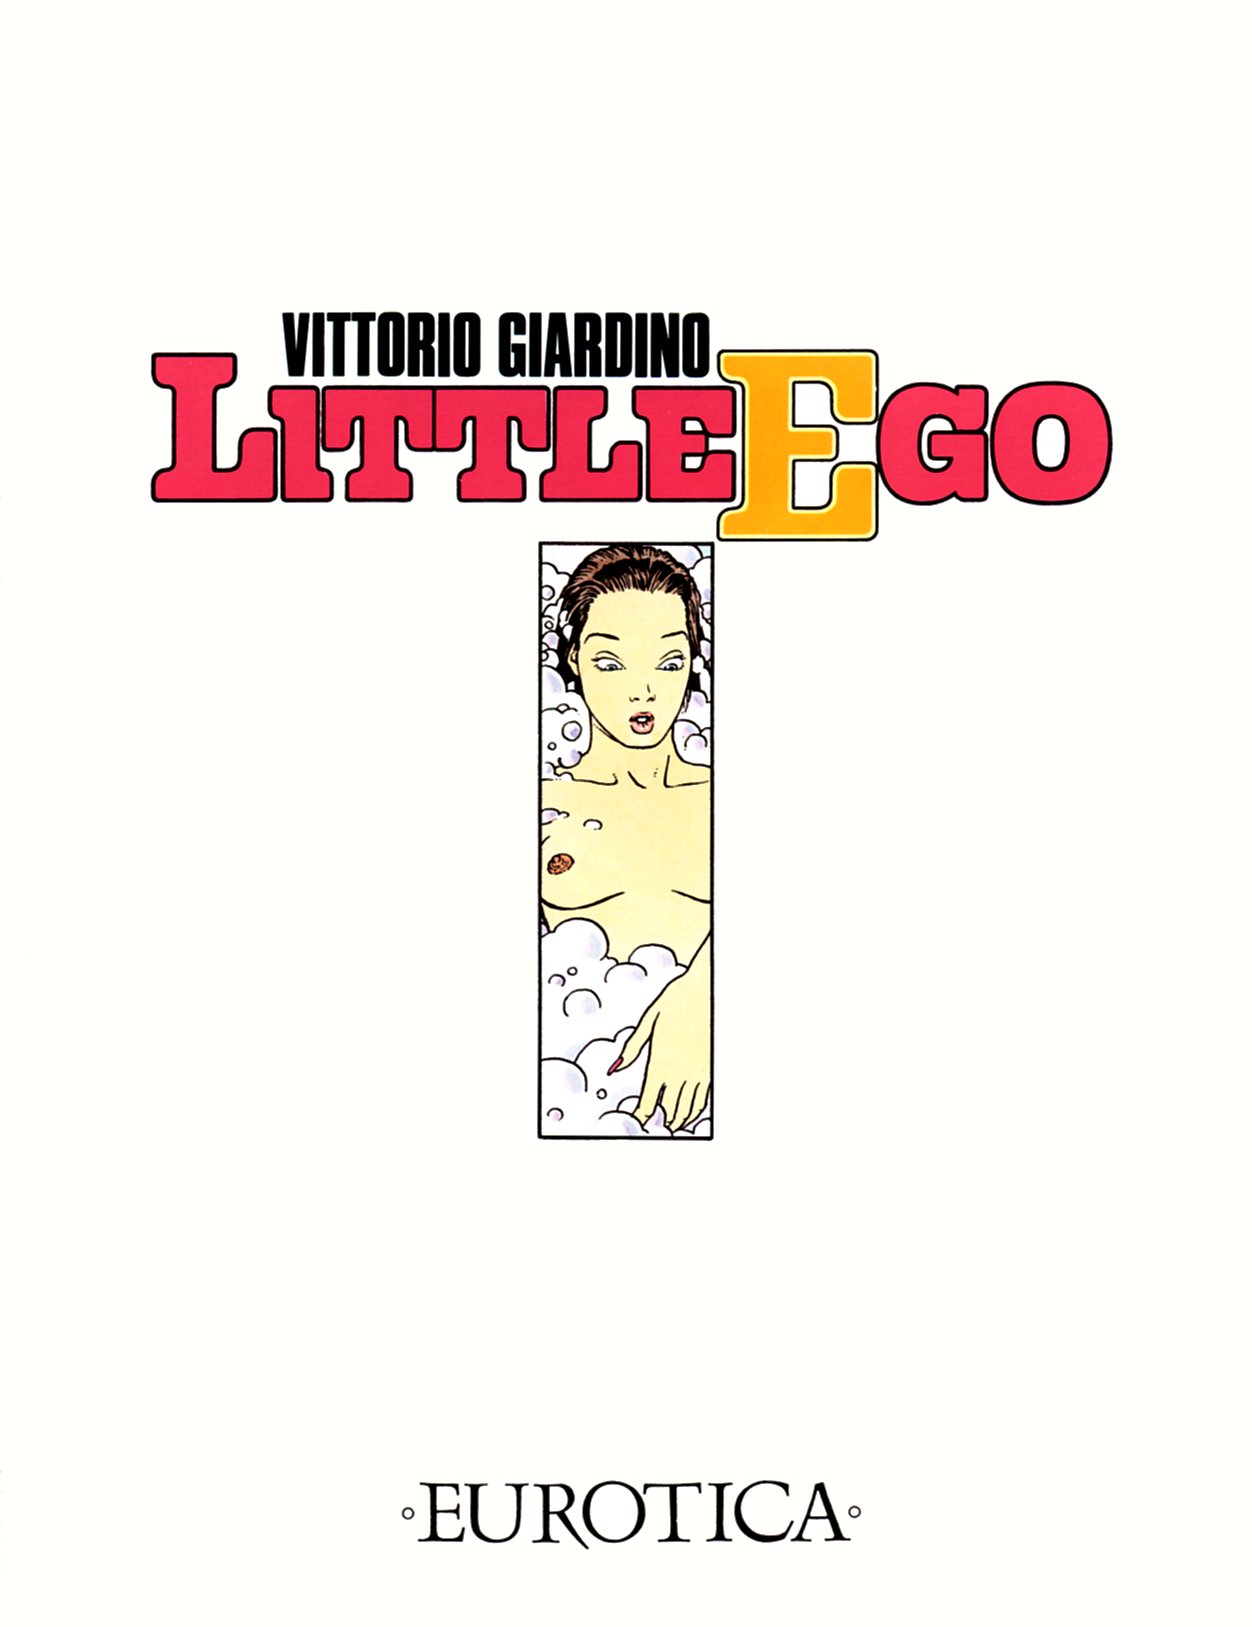 Vittorio Giardino - Little Ego